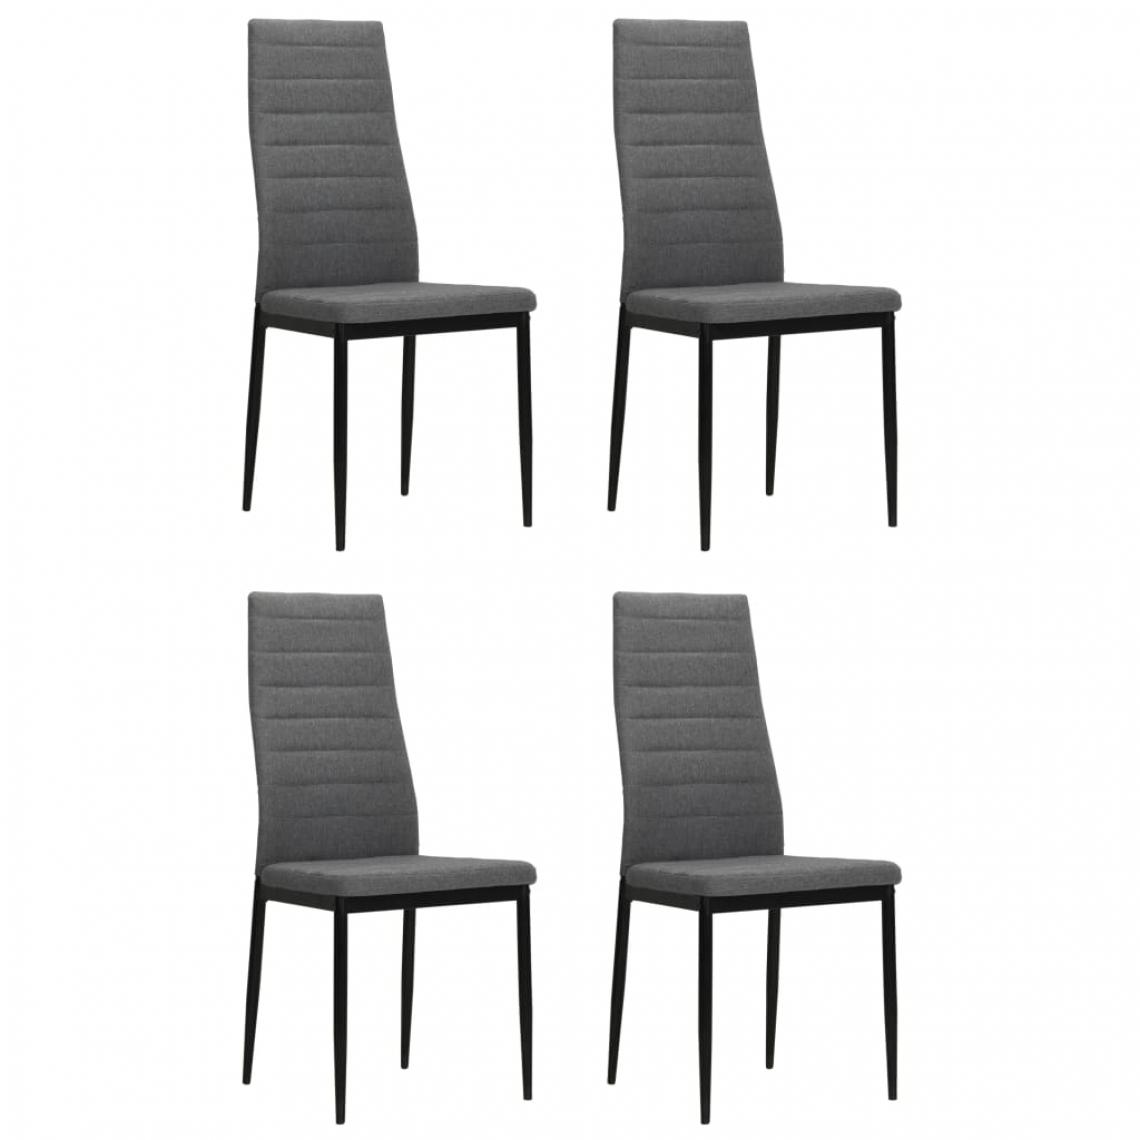 Decoshop26 - Lot de 4 chaises de salle à manger cuisine design moderne en tissu gris clair CDS021504 - Chaises